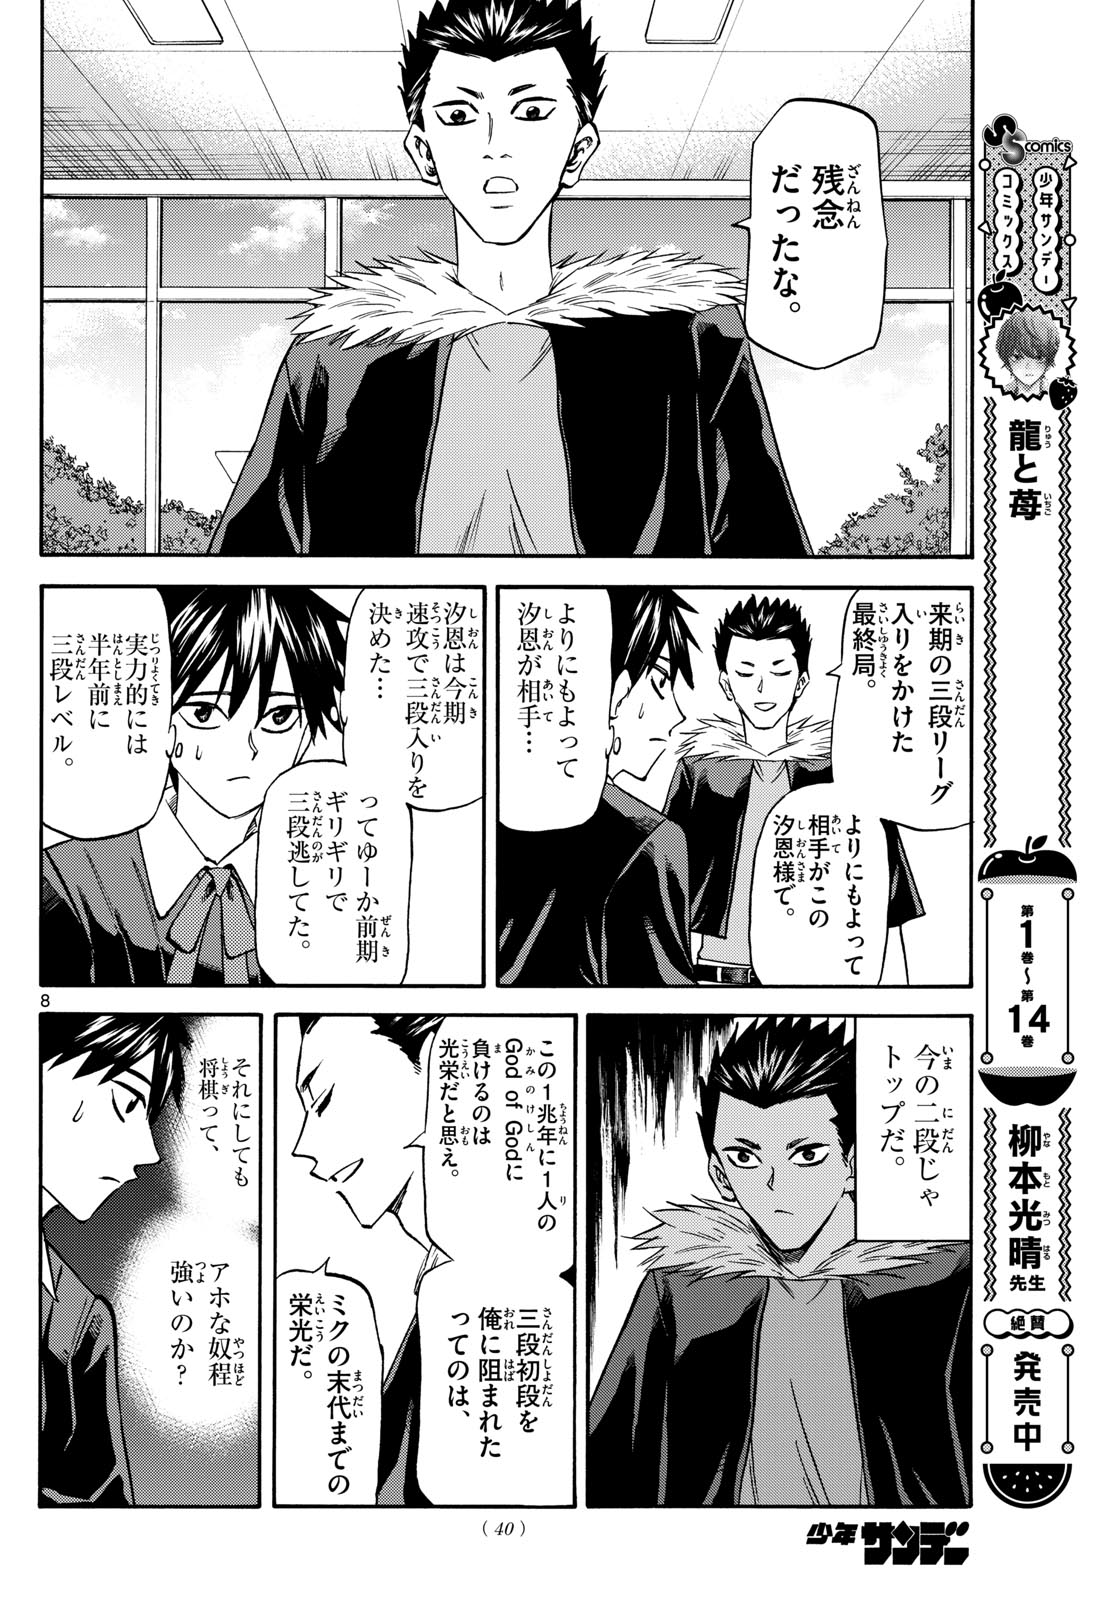 Tatsu to Ichigo - Chapter 181 - Page 8